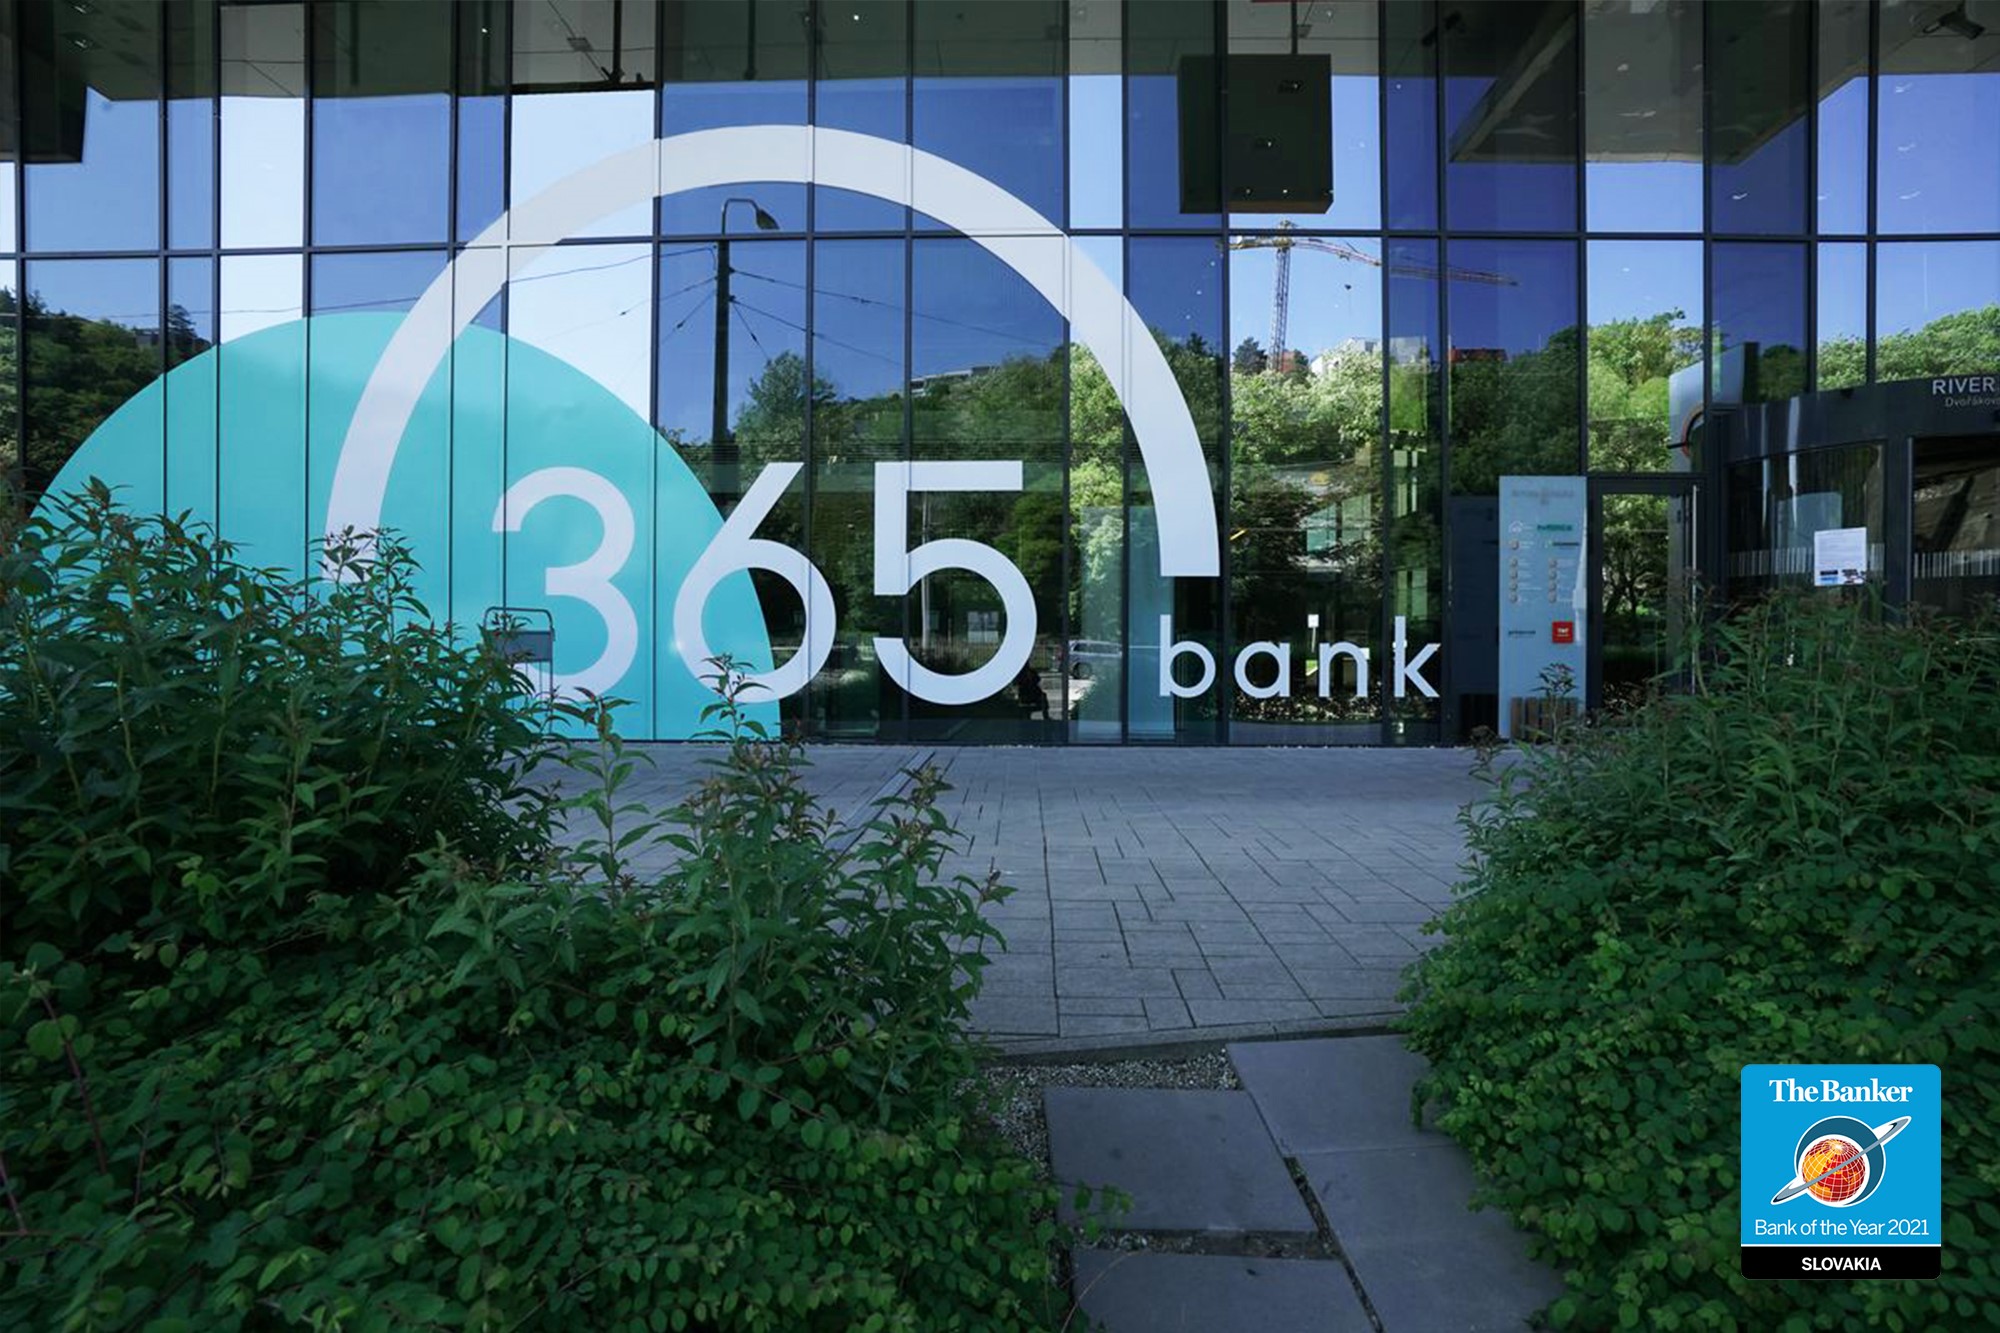 365.bank sa stala bankou roka na Slovensku podľa britského magazínu The Banker 